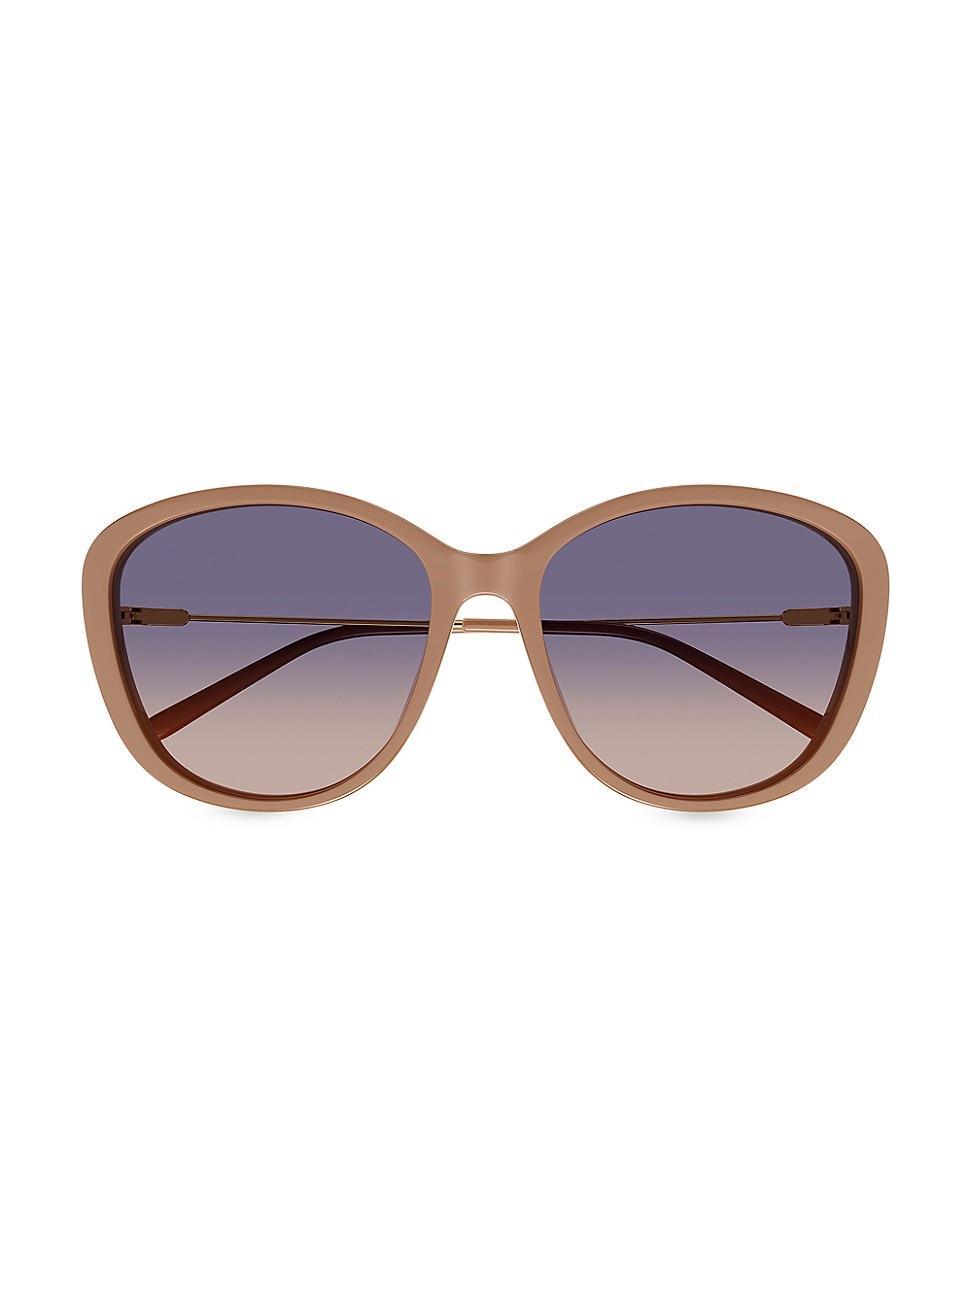 Carolina Herrera 52mm Rectangular Sunglasses Product Image